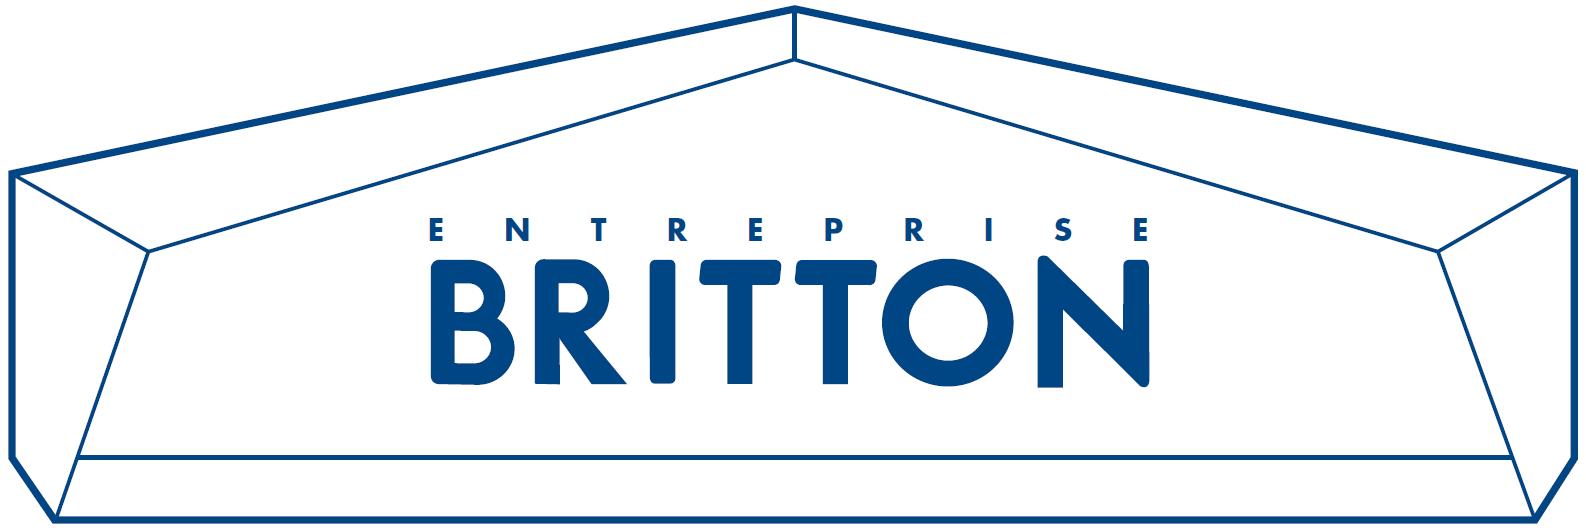 BRITTON-logo